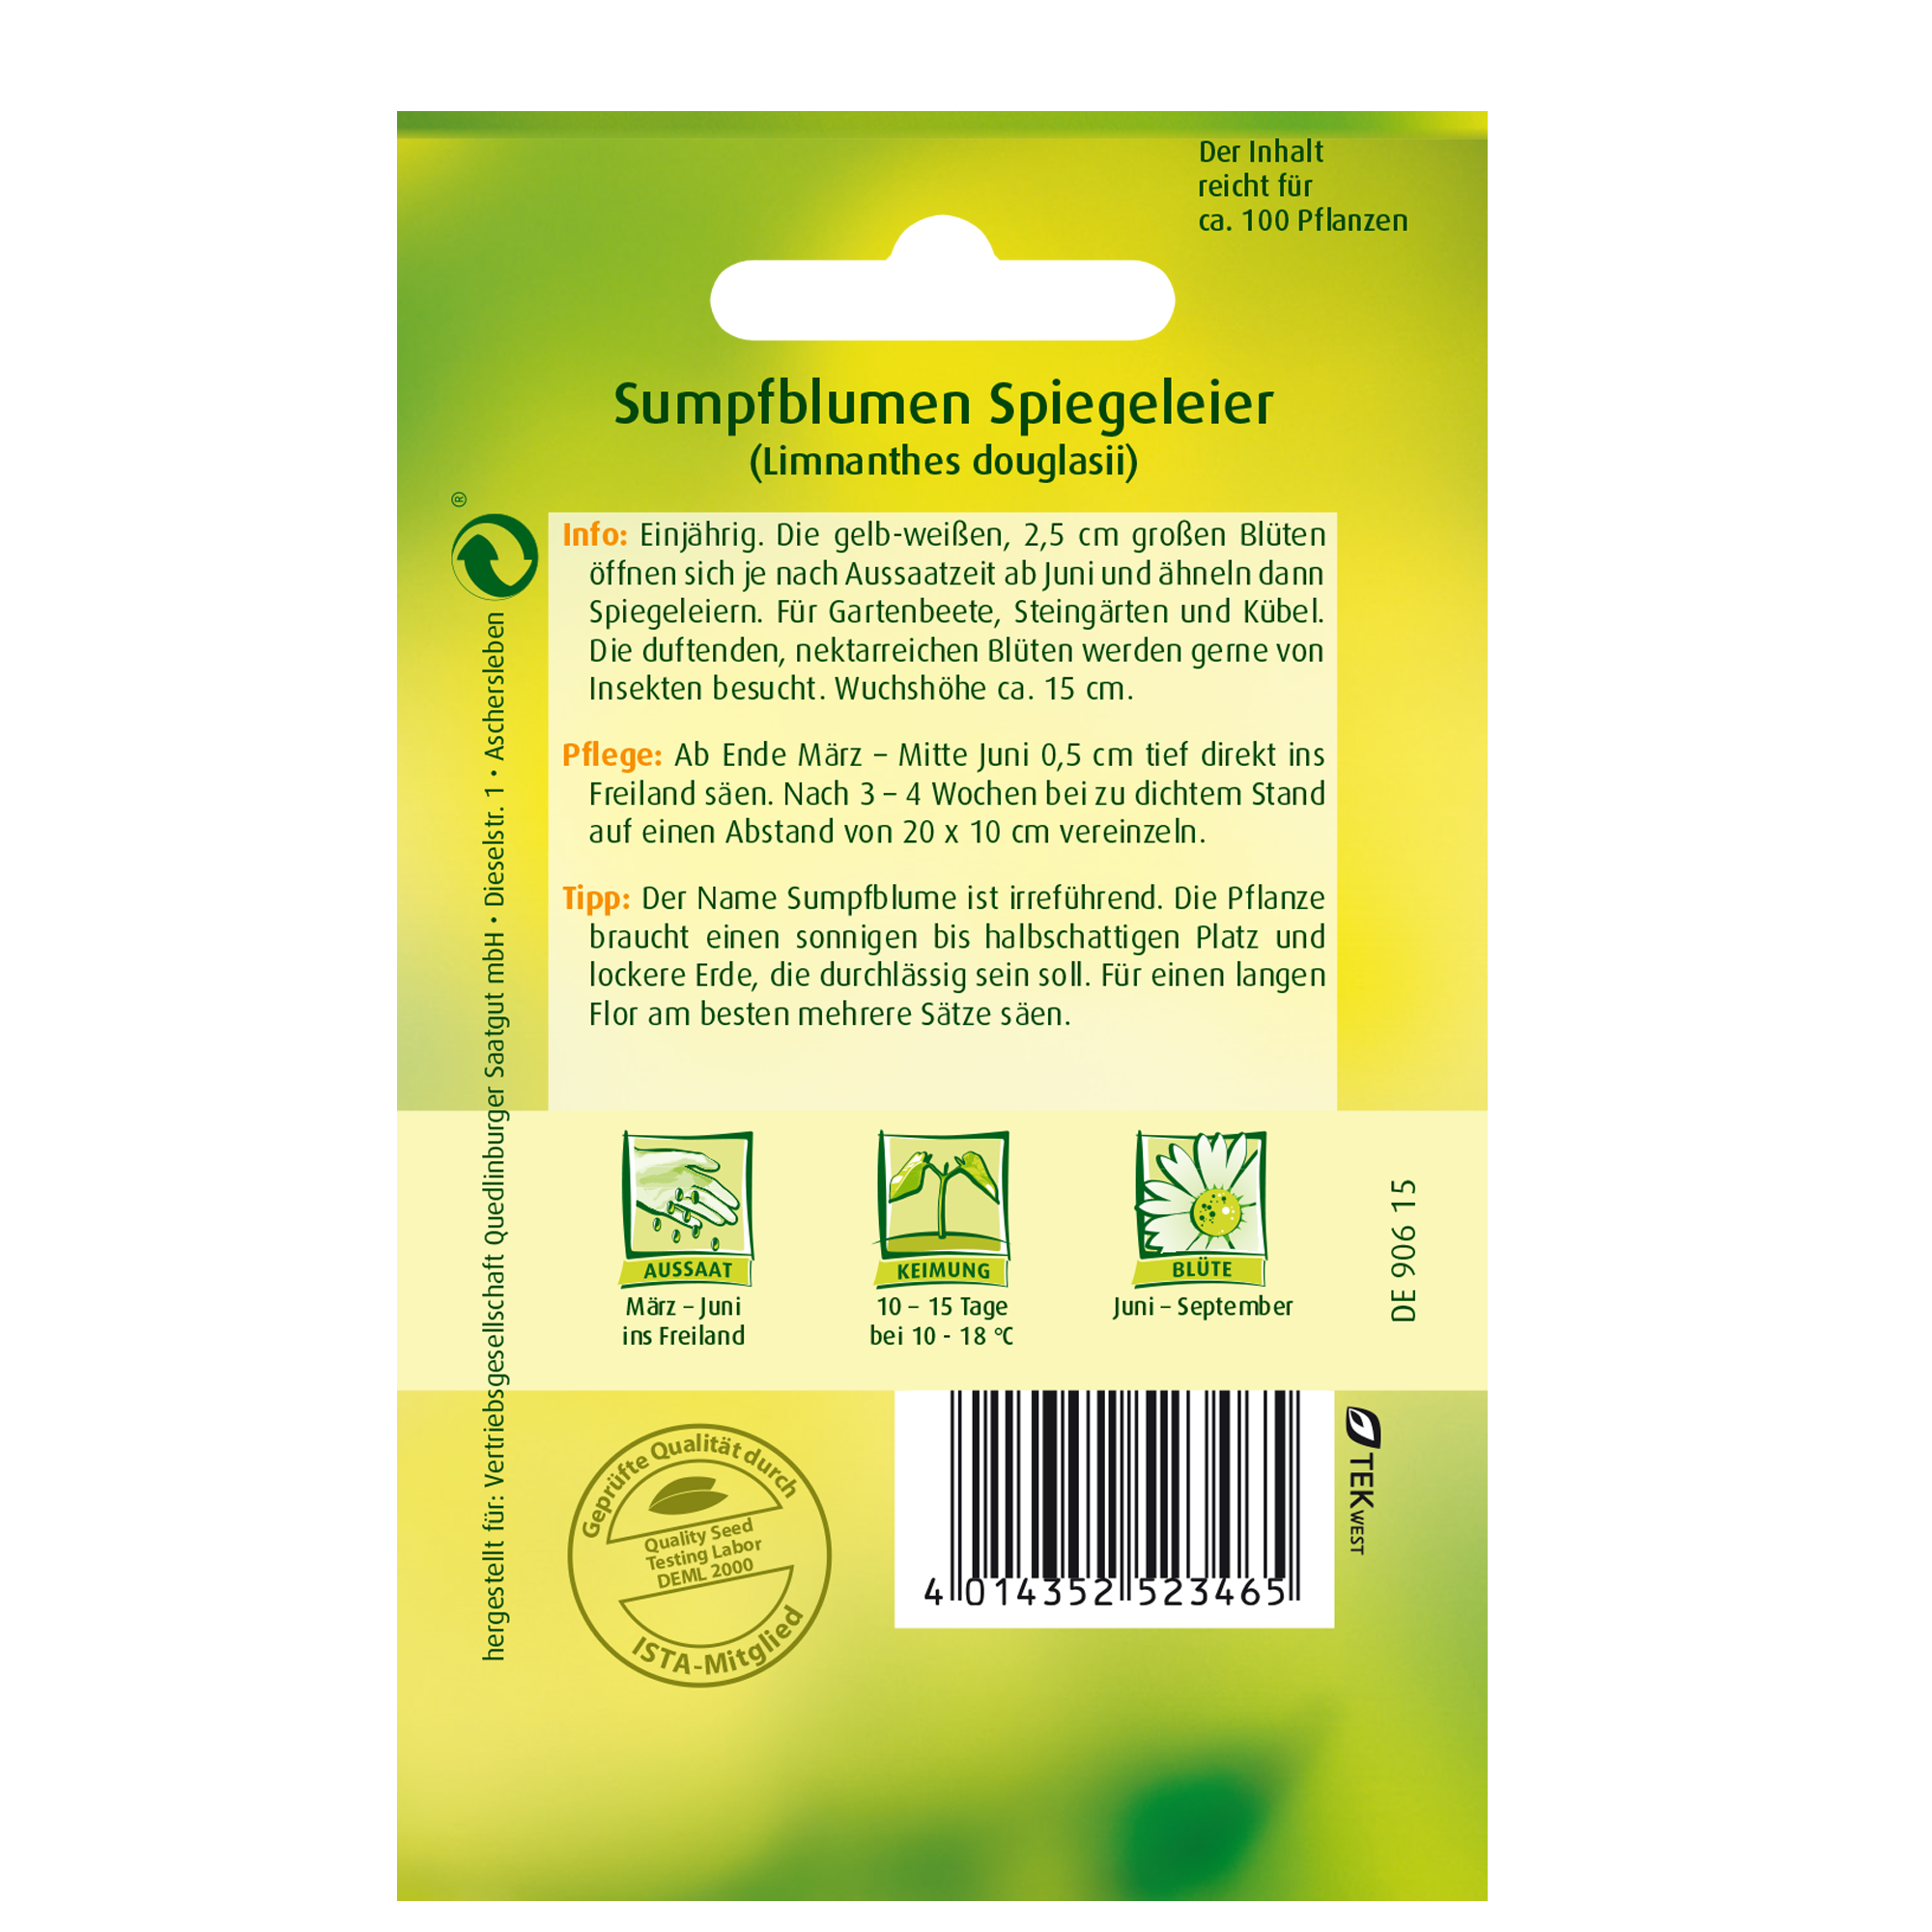 Sumpfblume 'Spiegeleier' + product picture